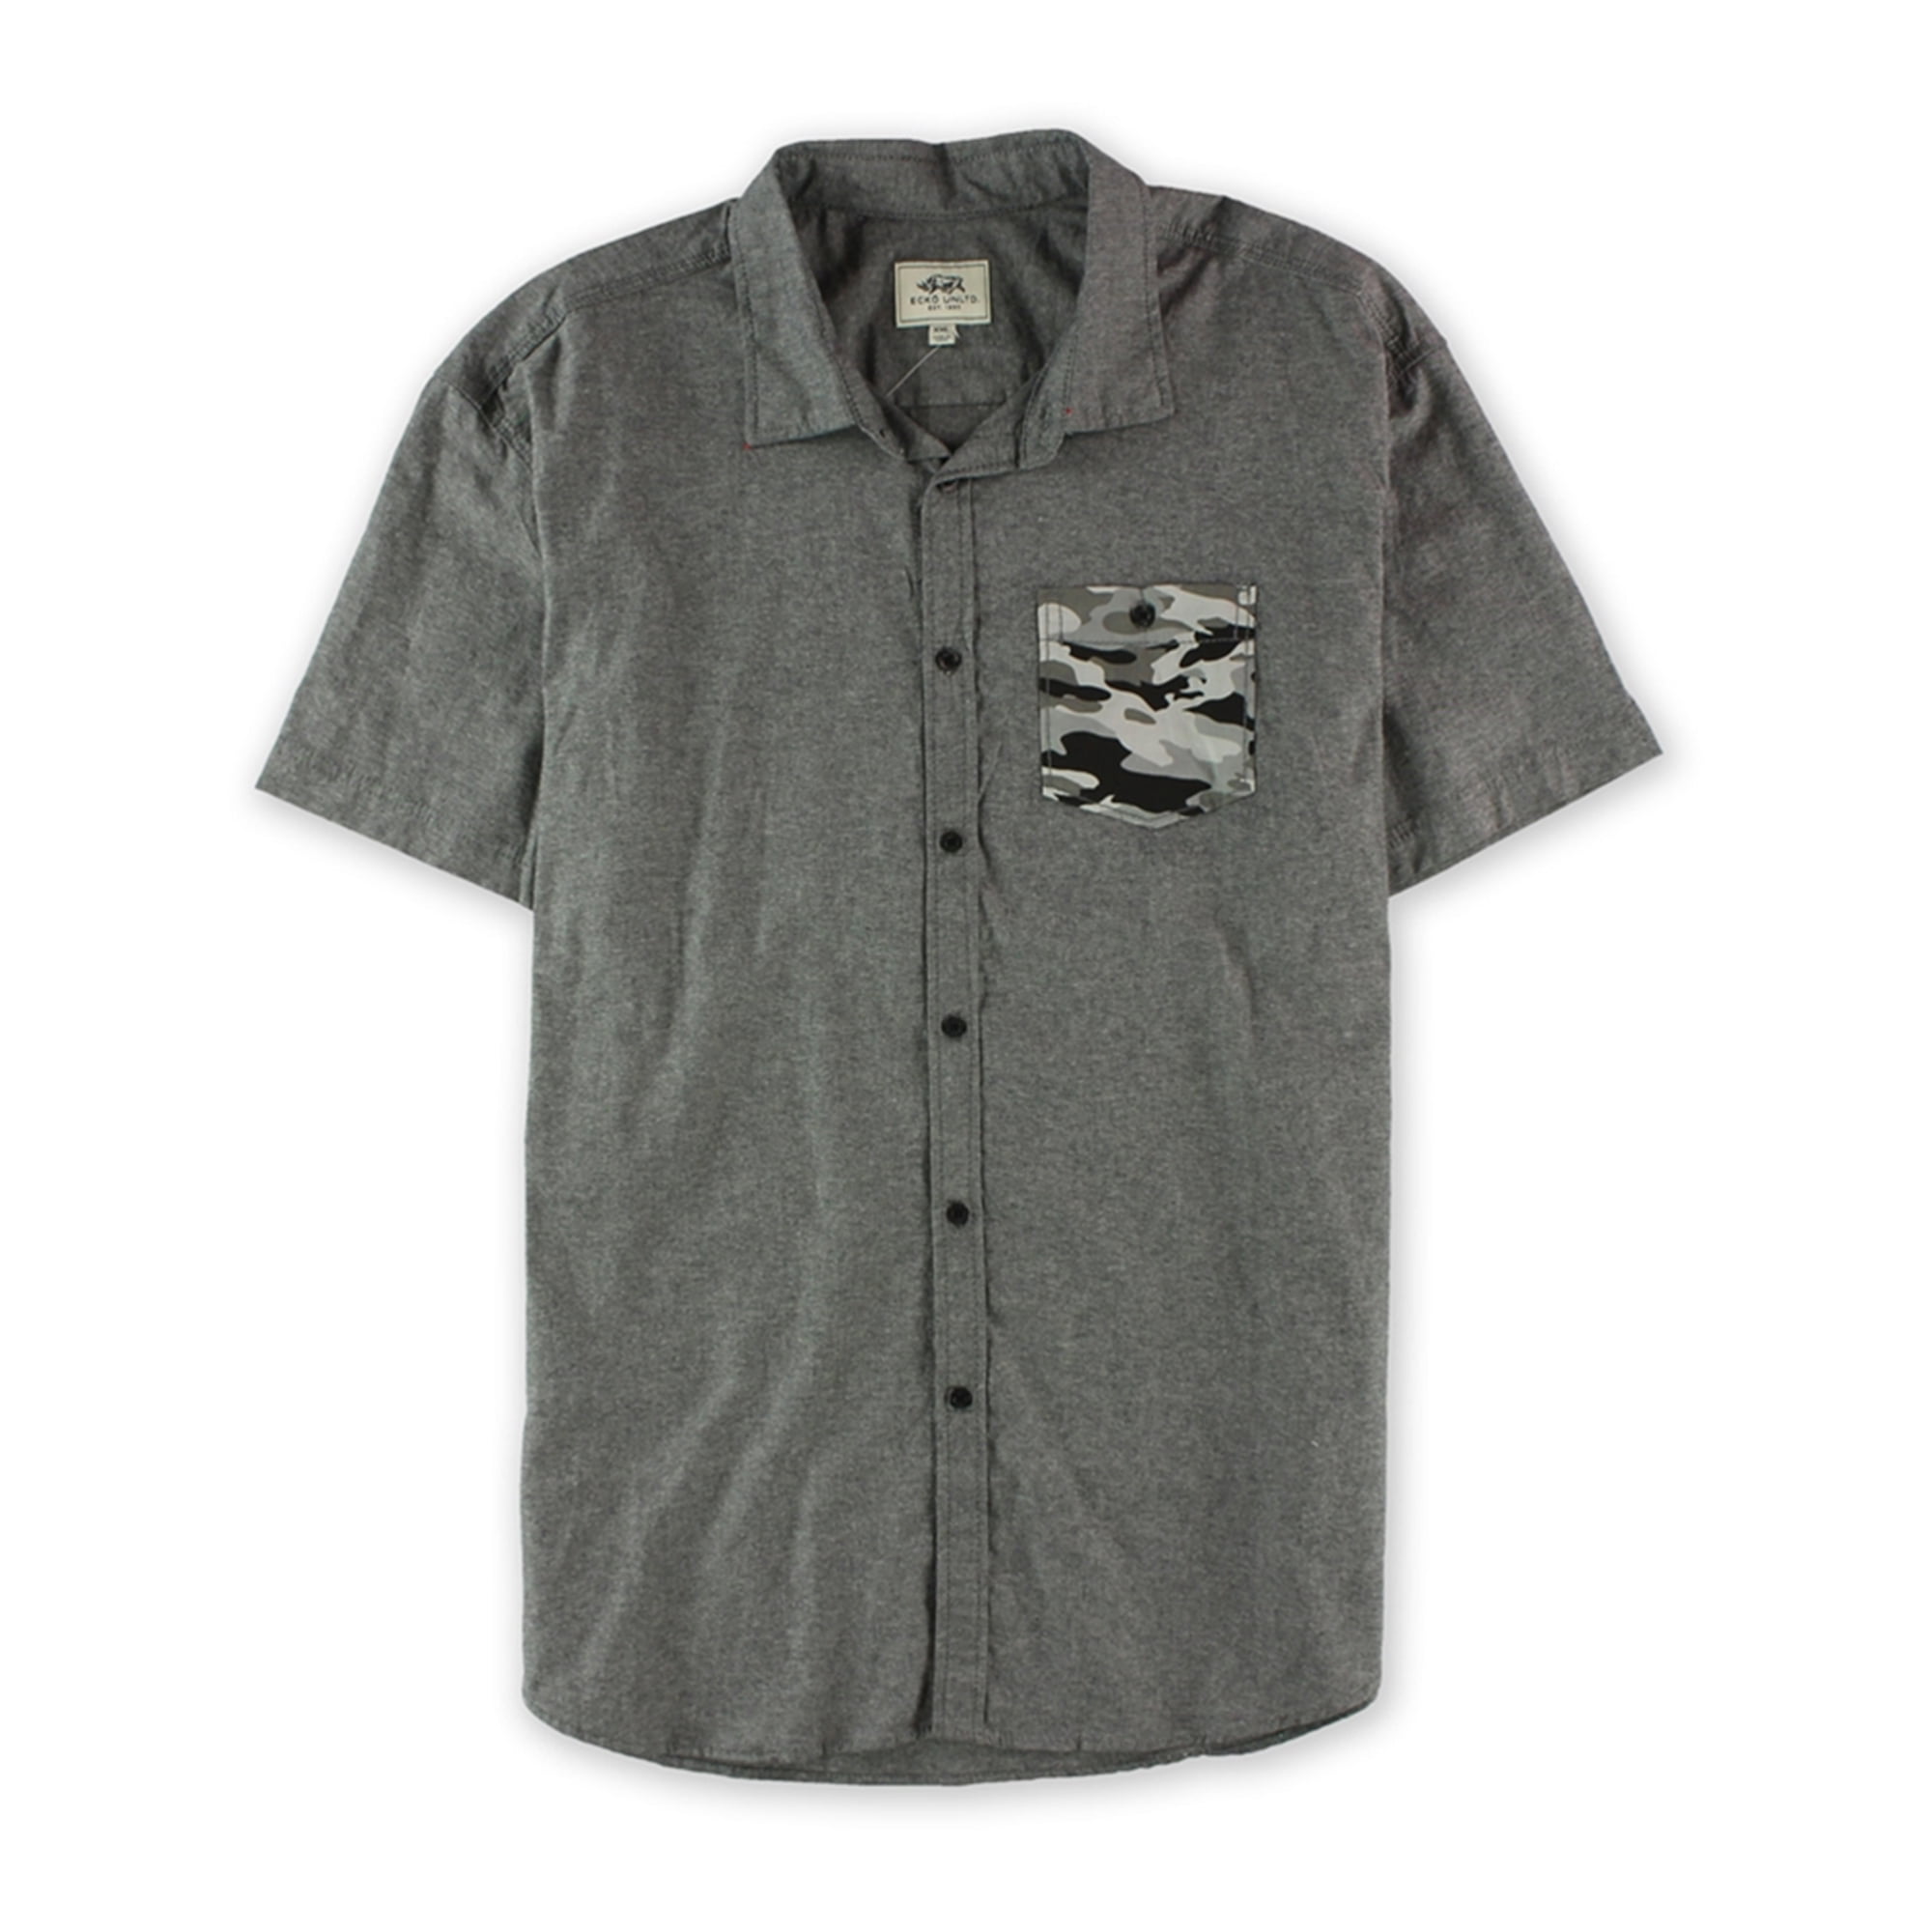 Ecko Unltd. Mens Woven Camo Pocket Button Up Shirt, Grey, X-Small ...